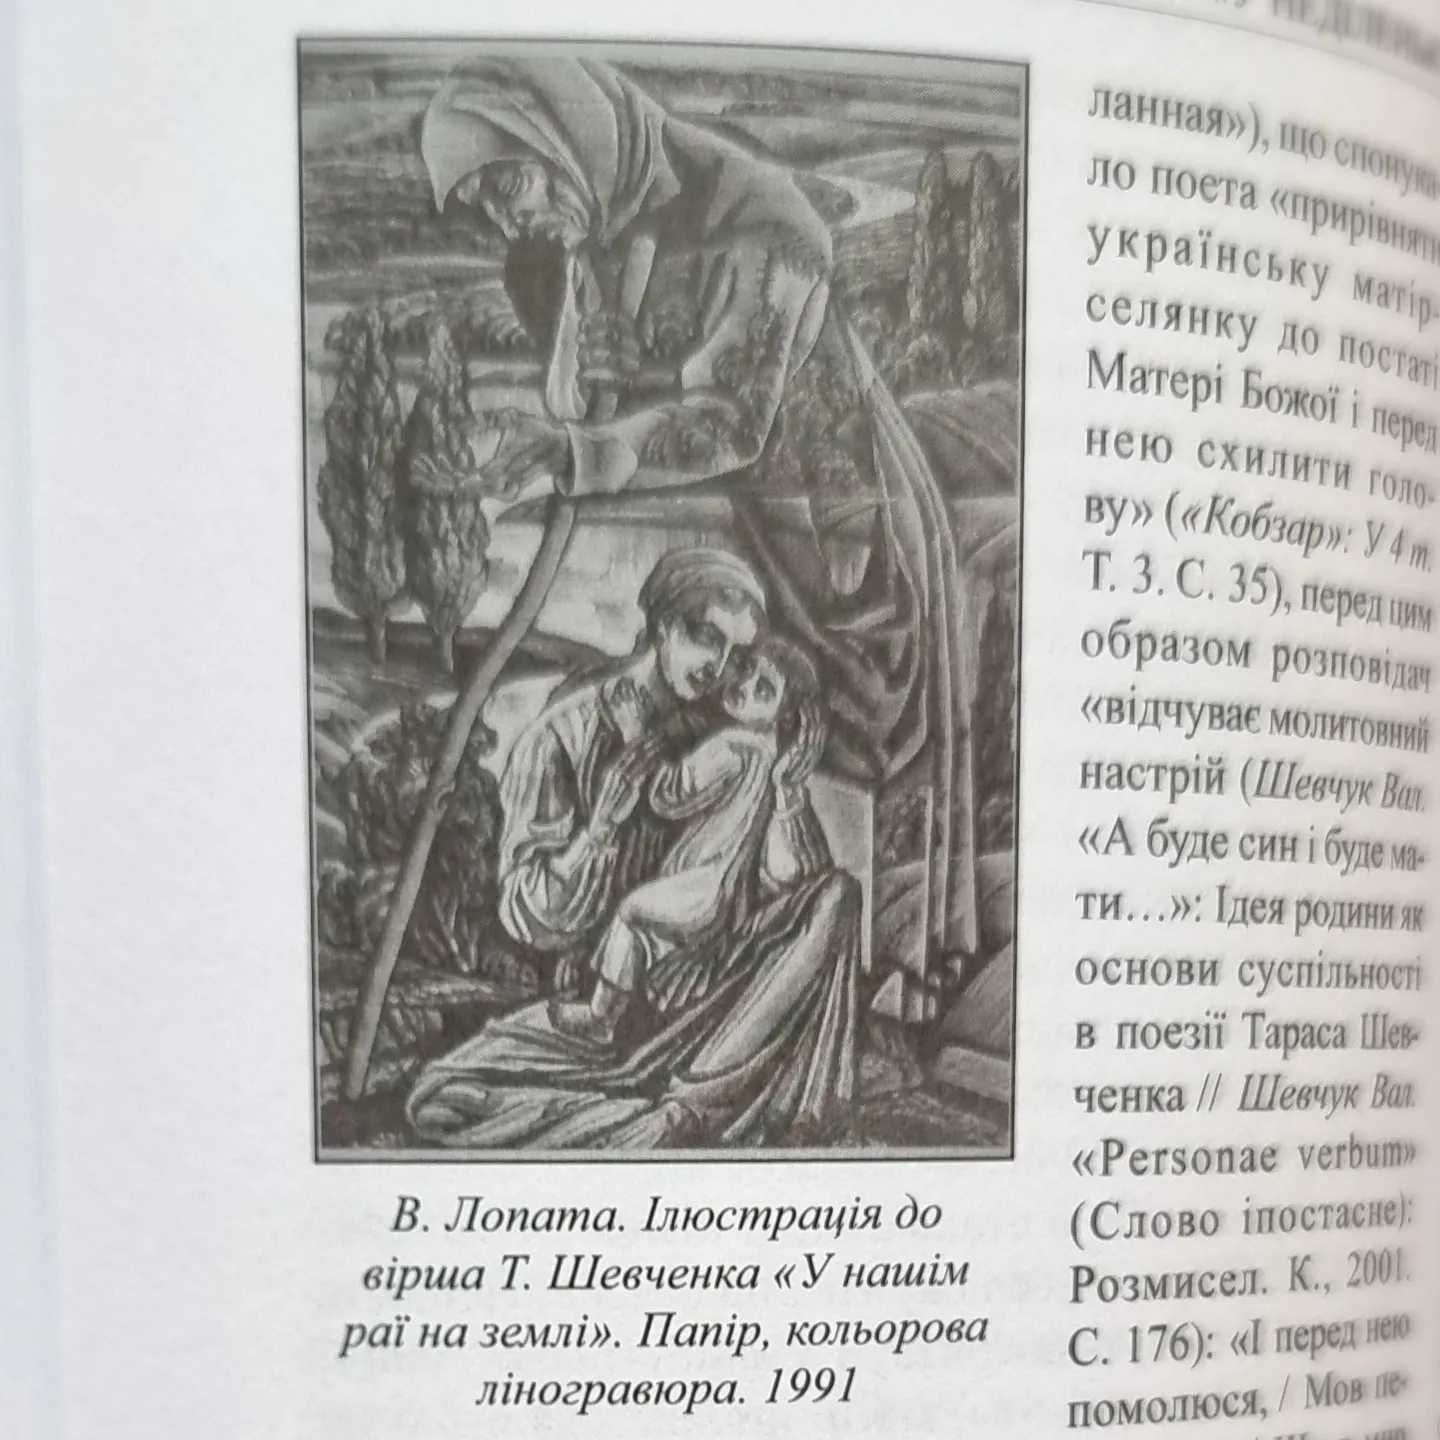 Шевченківська енциклопедія 5, 6 т. з шести - ціна за том - 2076 статей